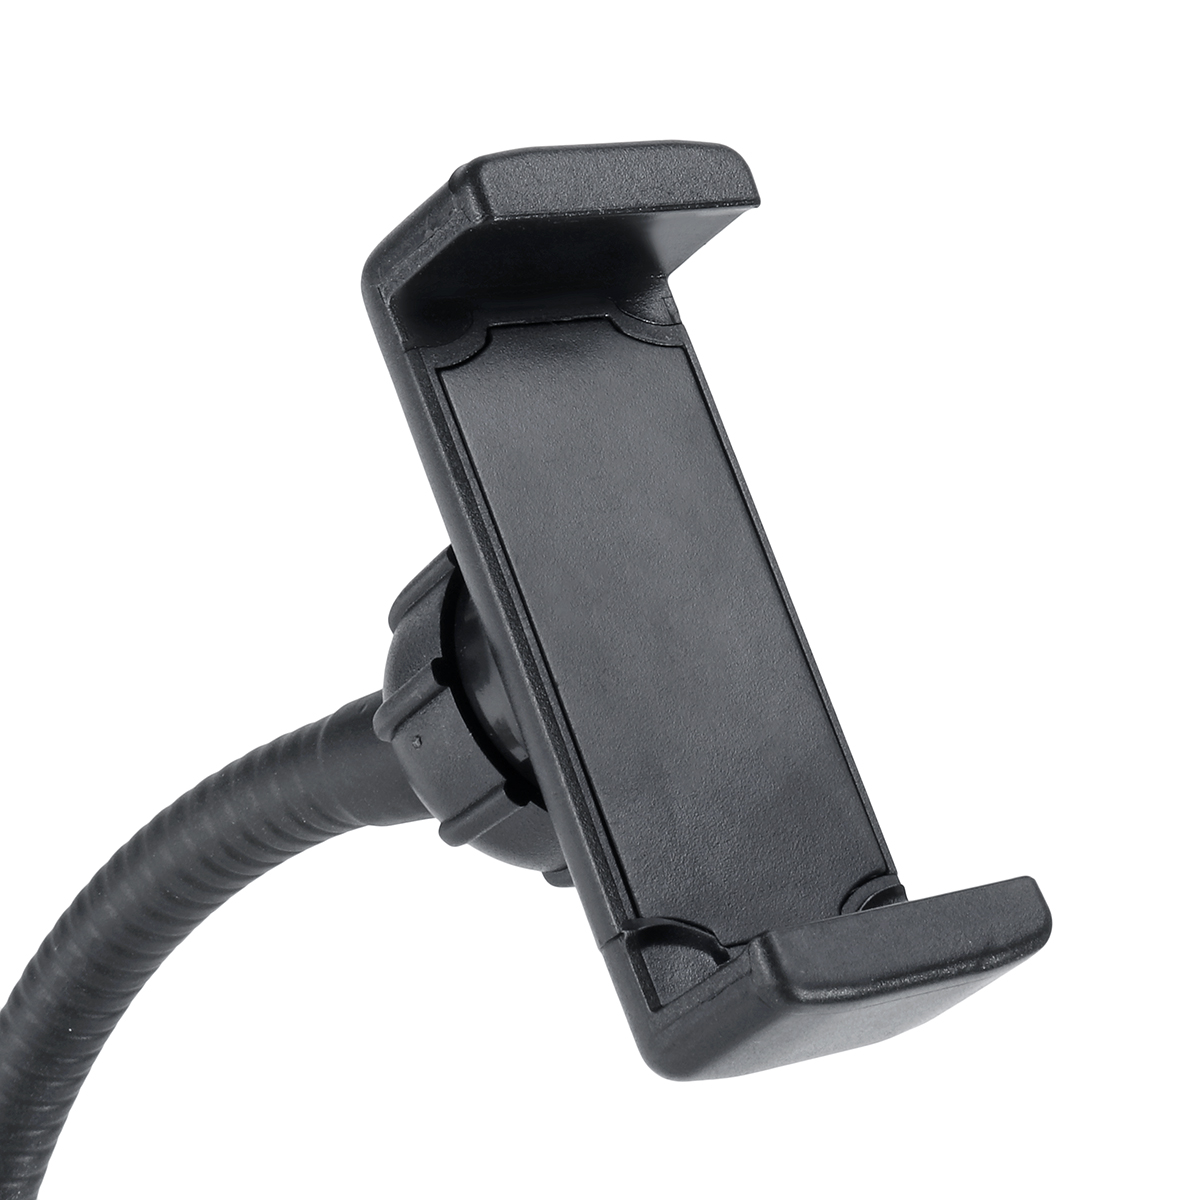 BG12W-2-in-1-Flexible-Controllable-USB-Interface-9cm-12W-LED-Selfie-Ring-Light--Desktop-Phone-Holder-1688720-10